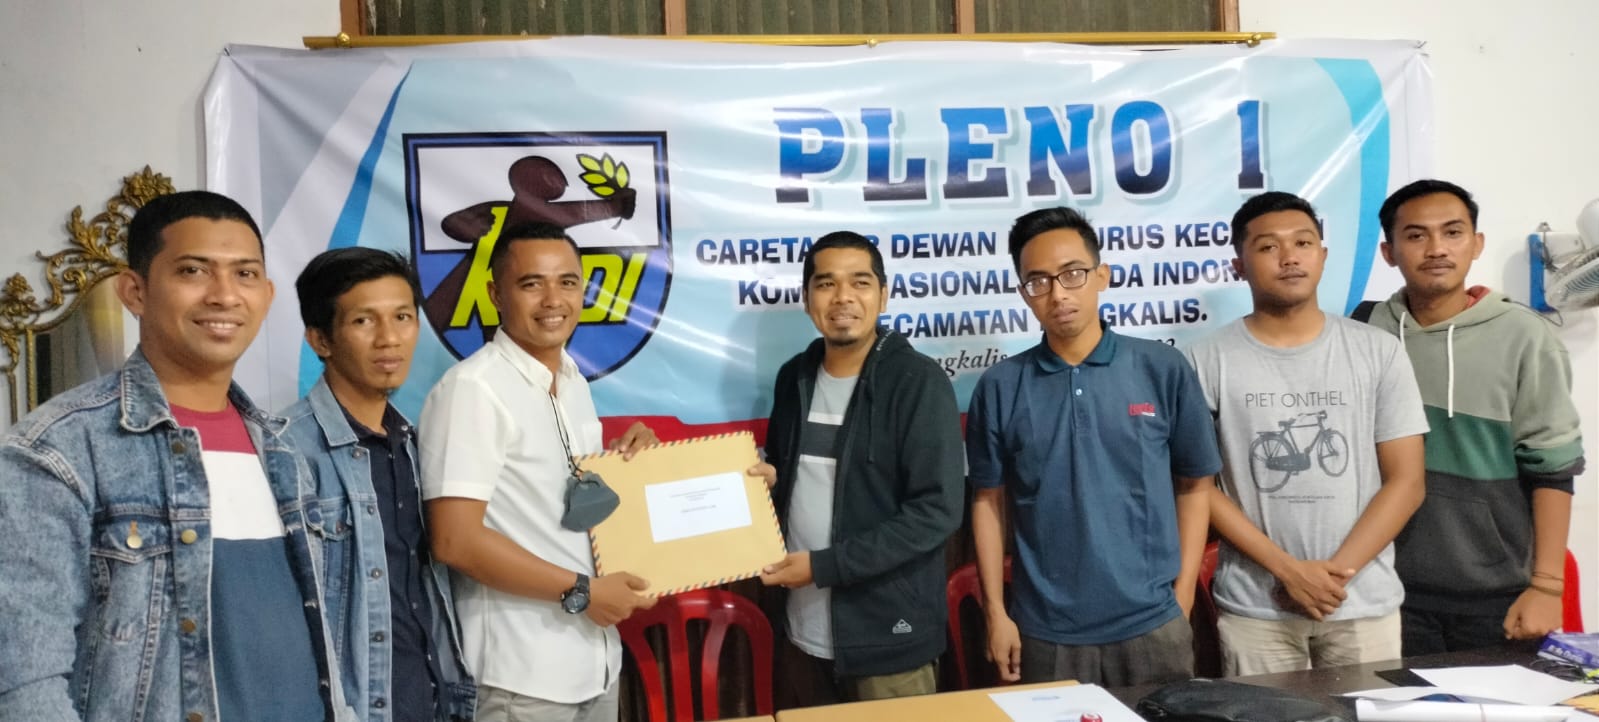 Tokoh Pemuda Bengkalis Calonkan Diri Jadi Ketua KNPI Kecamatan